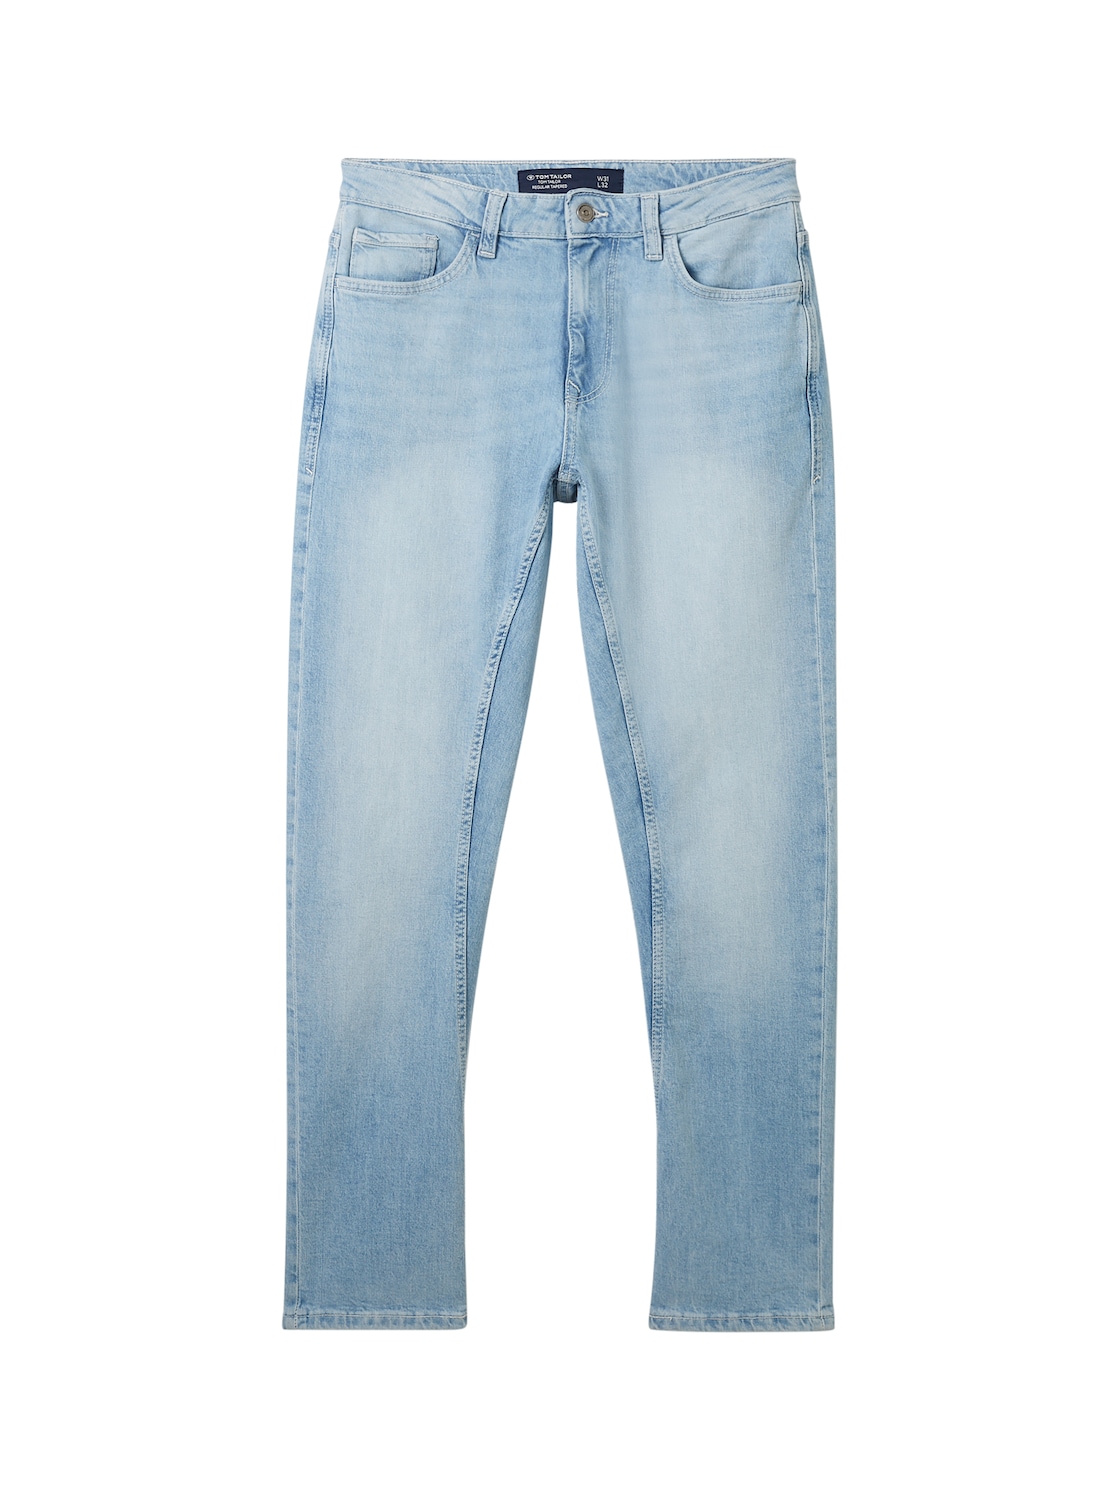 TOM TAILOR Herren Regular Tapered Jeans mit recycelter Baumwolle, blau, Uni, Gr. 33/32 von Tom Tailor